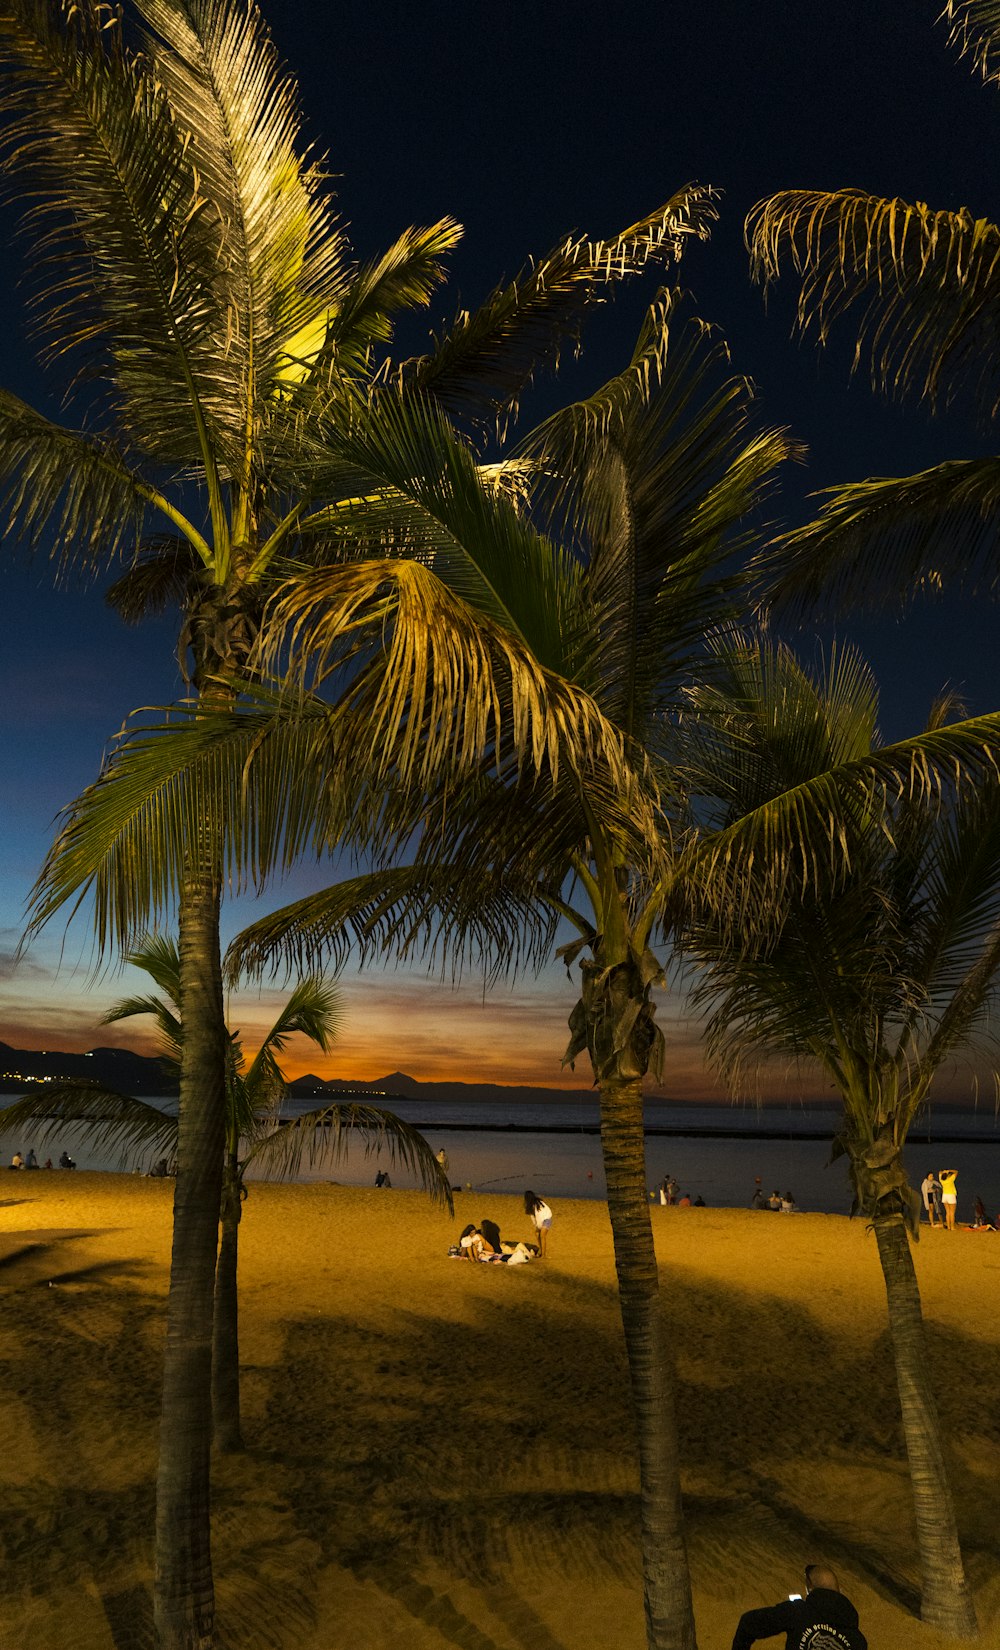 Un par de palmeras sentadas en la cima de una playa